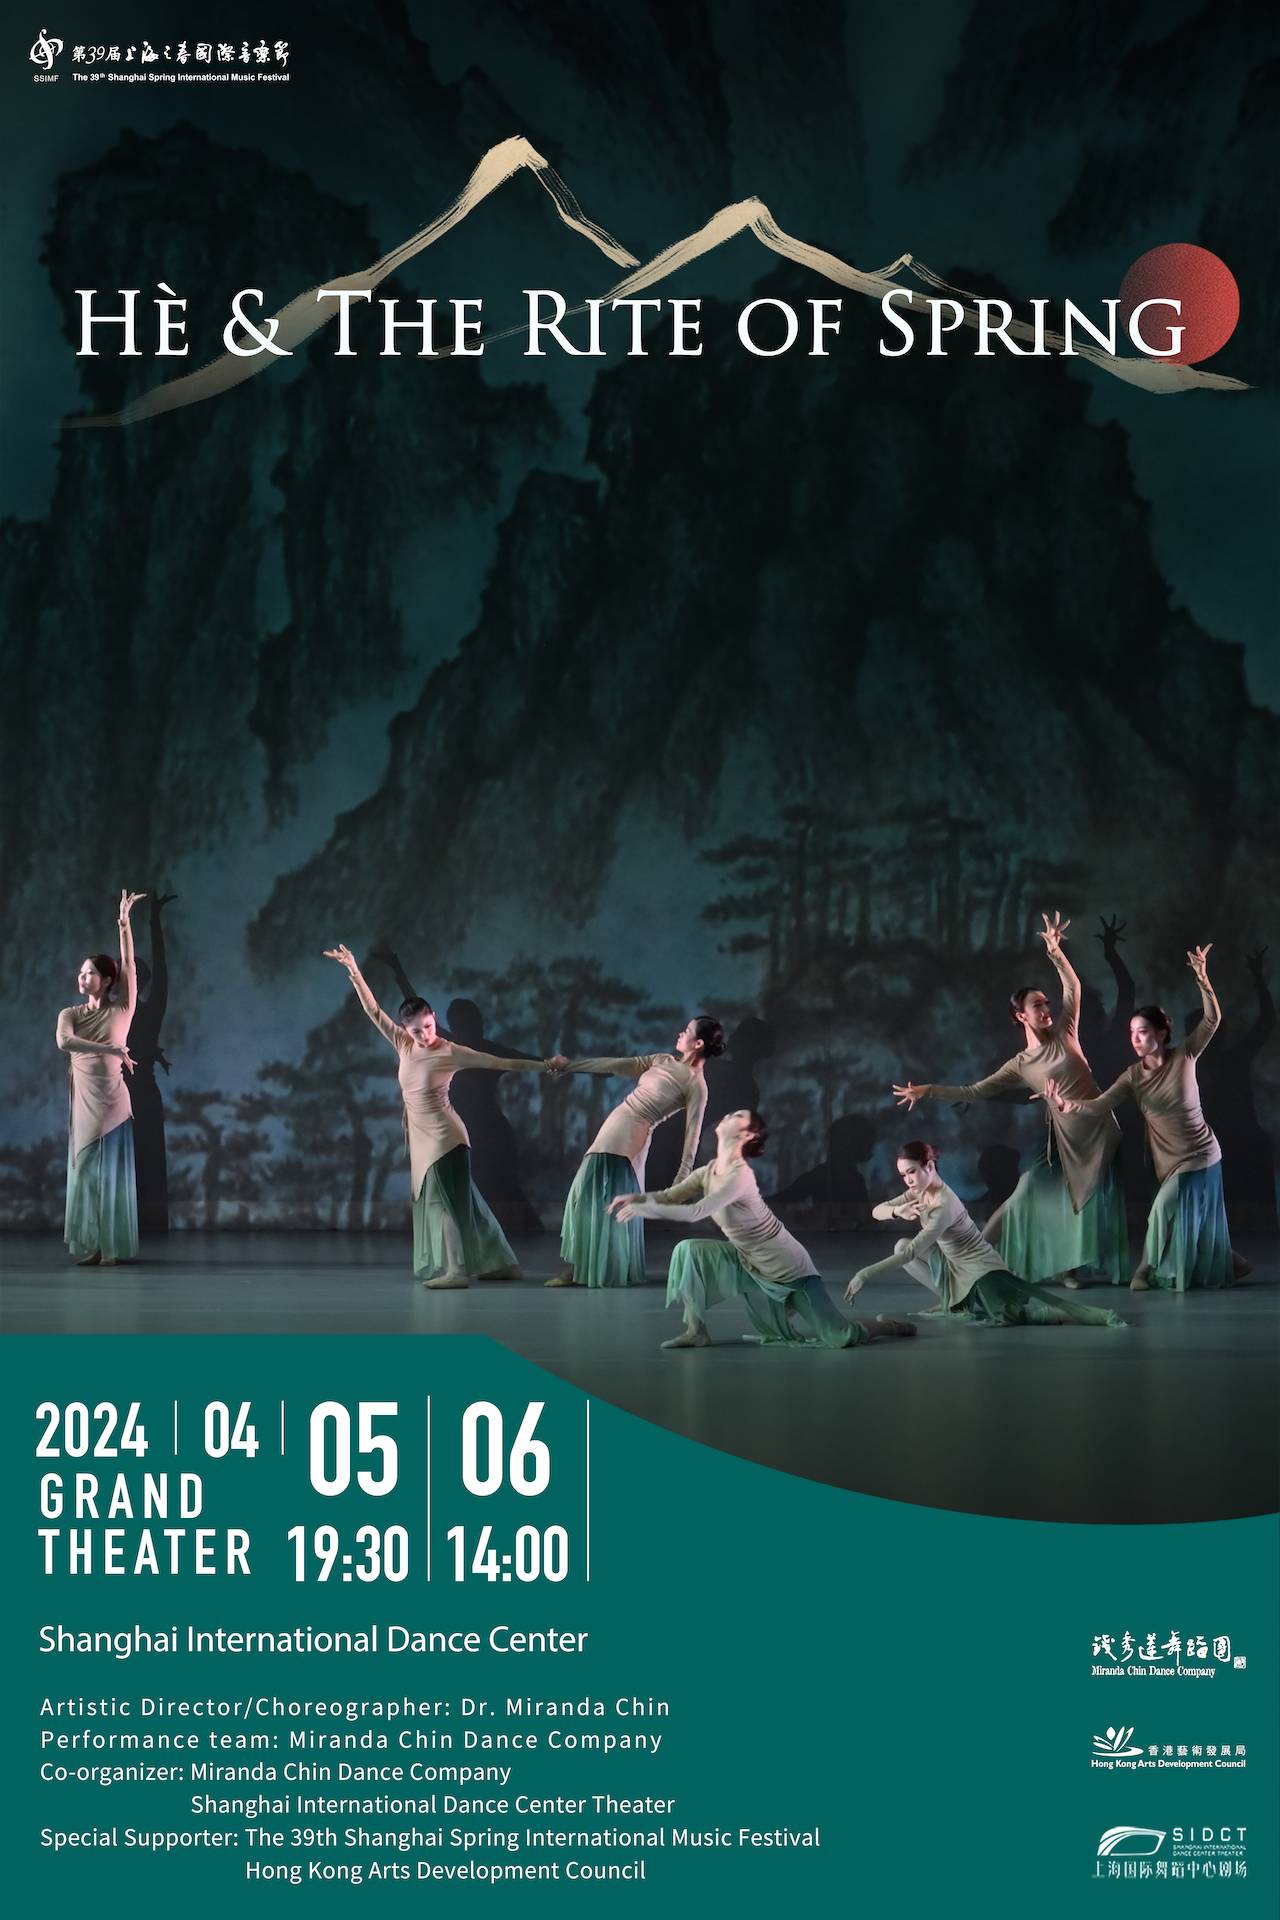 Miranda Chin Dance Company "Hè & The Rite of Spring"